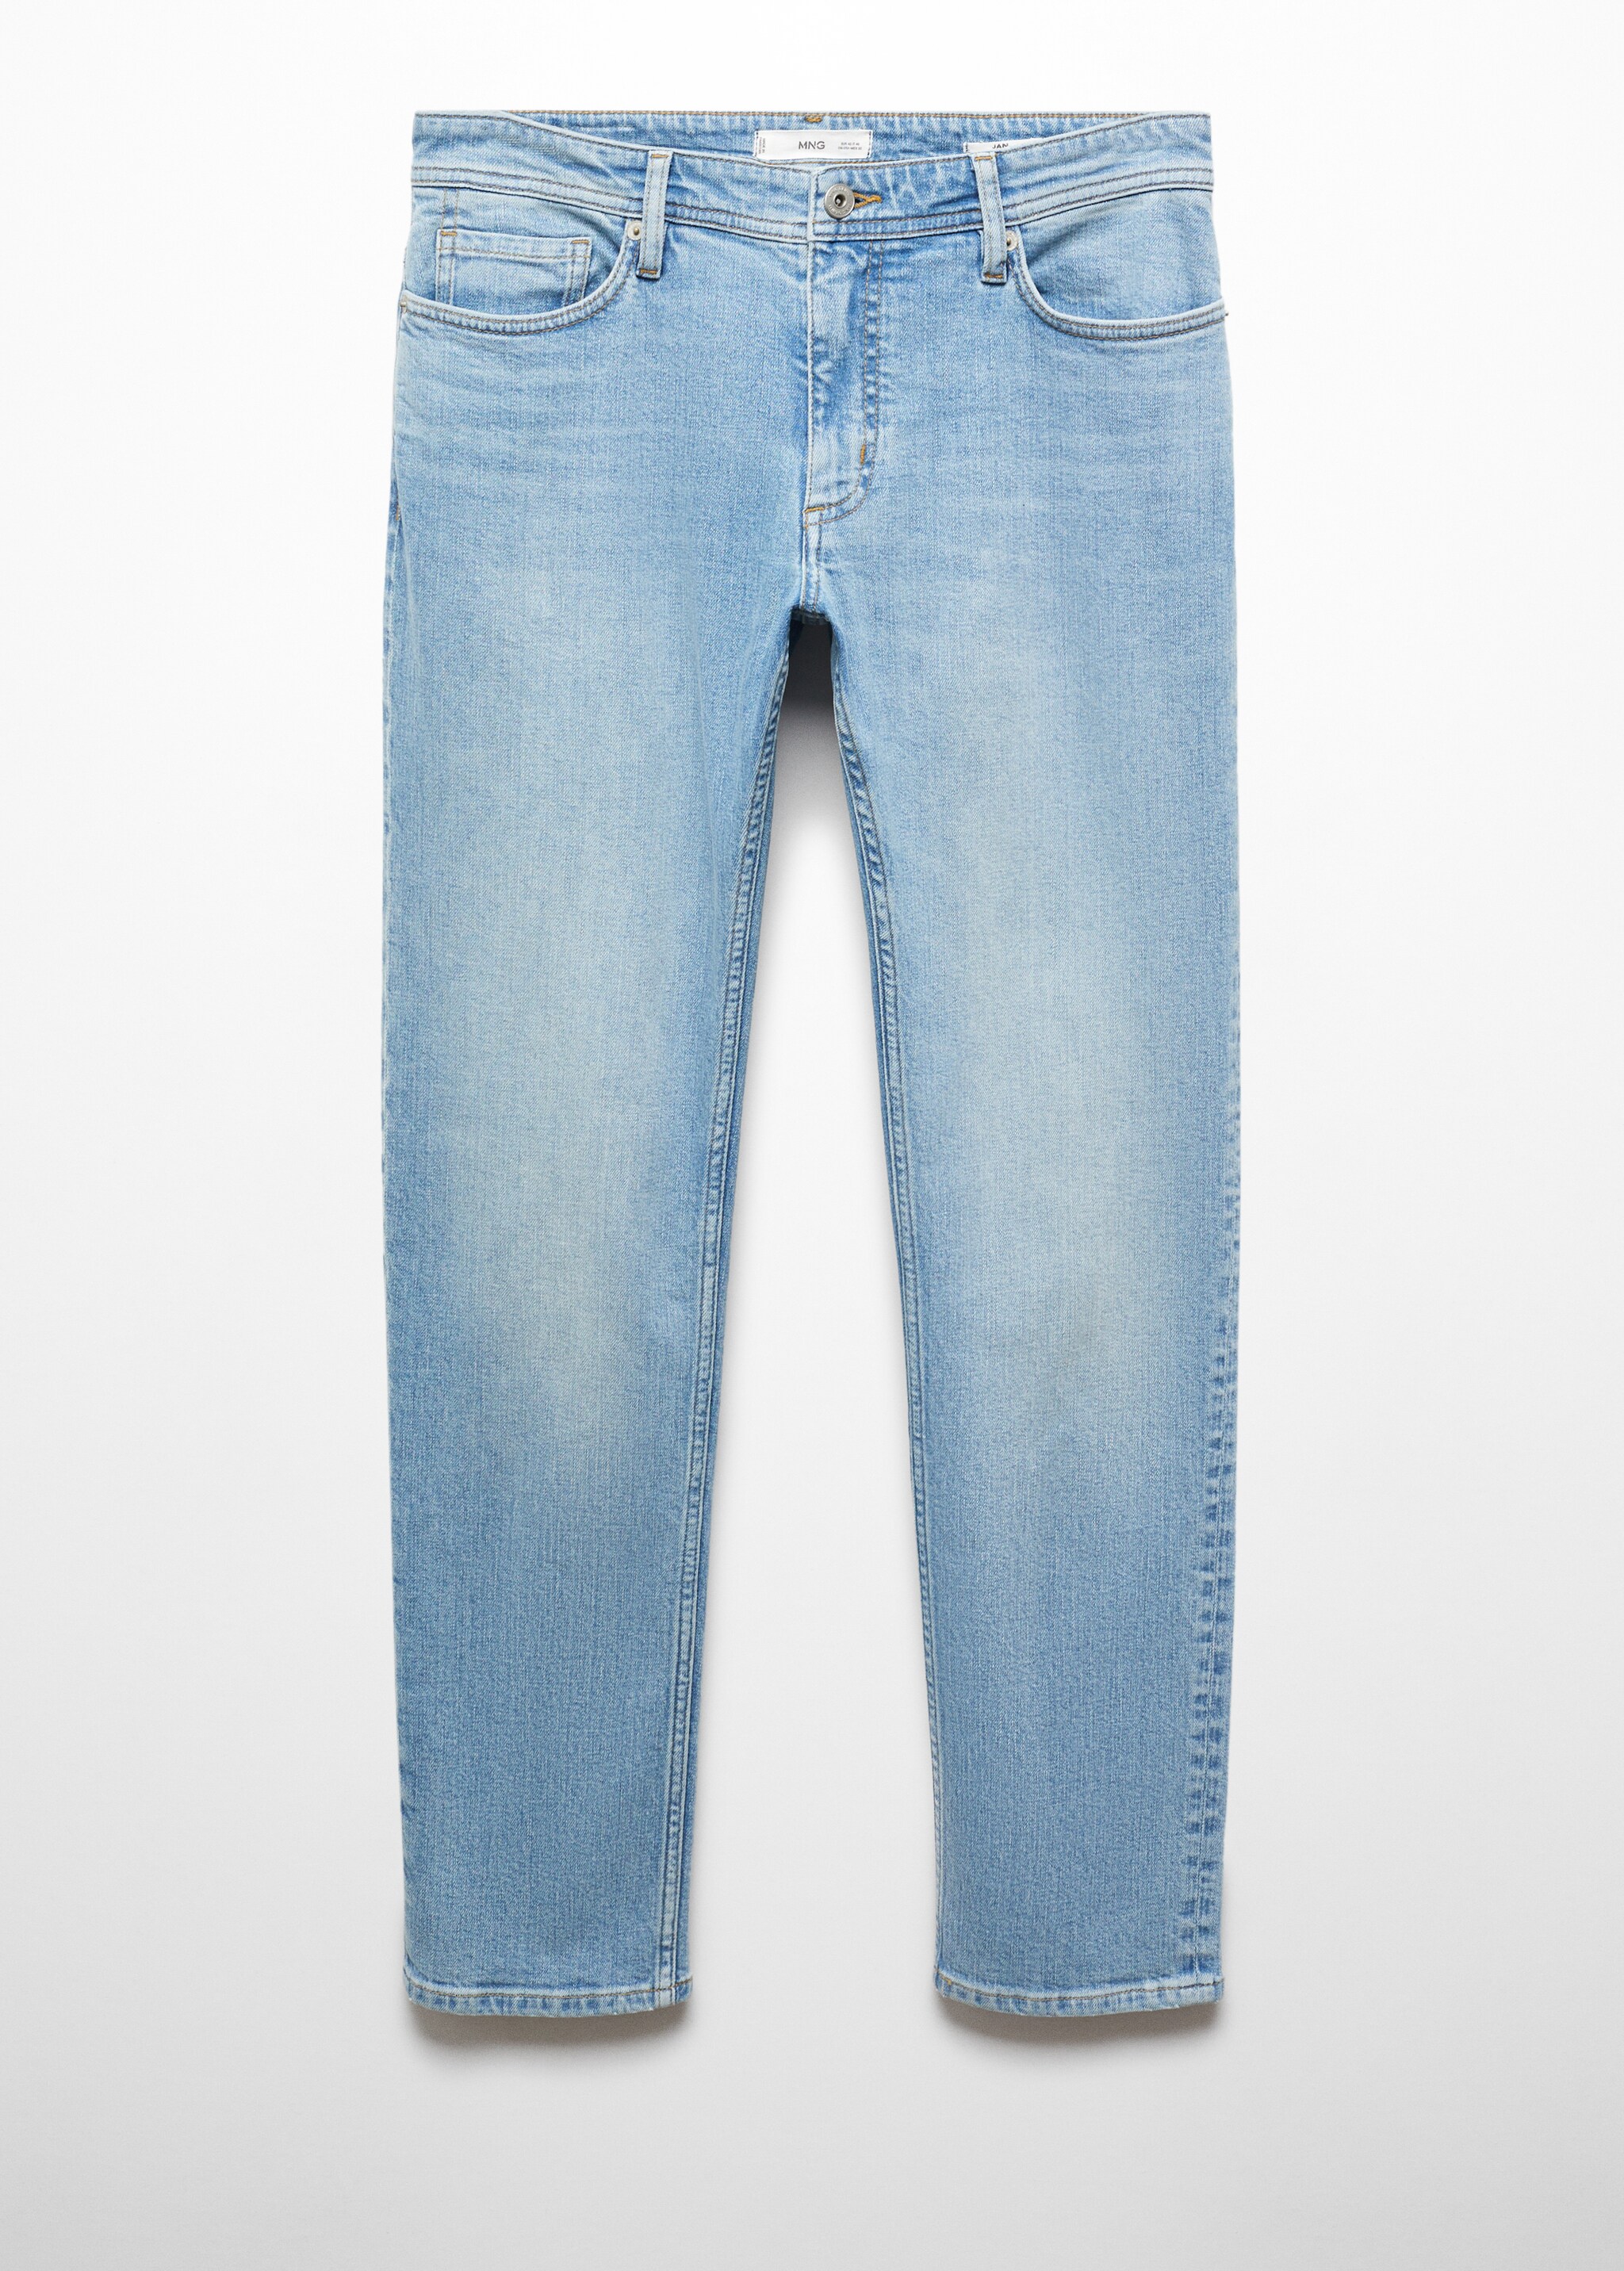 Jeans Jan slim fit - Artigo sem modelo